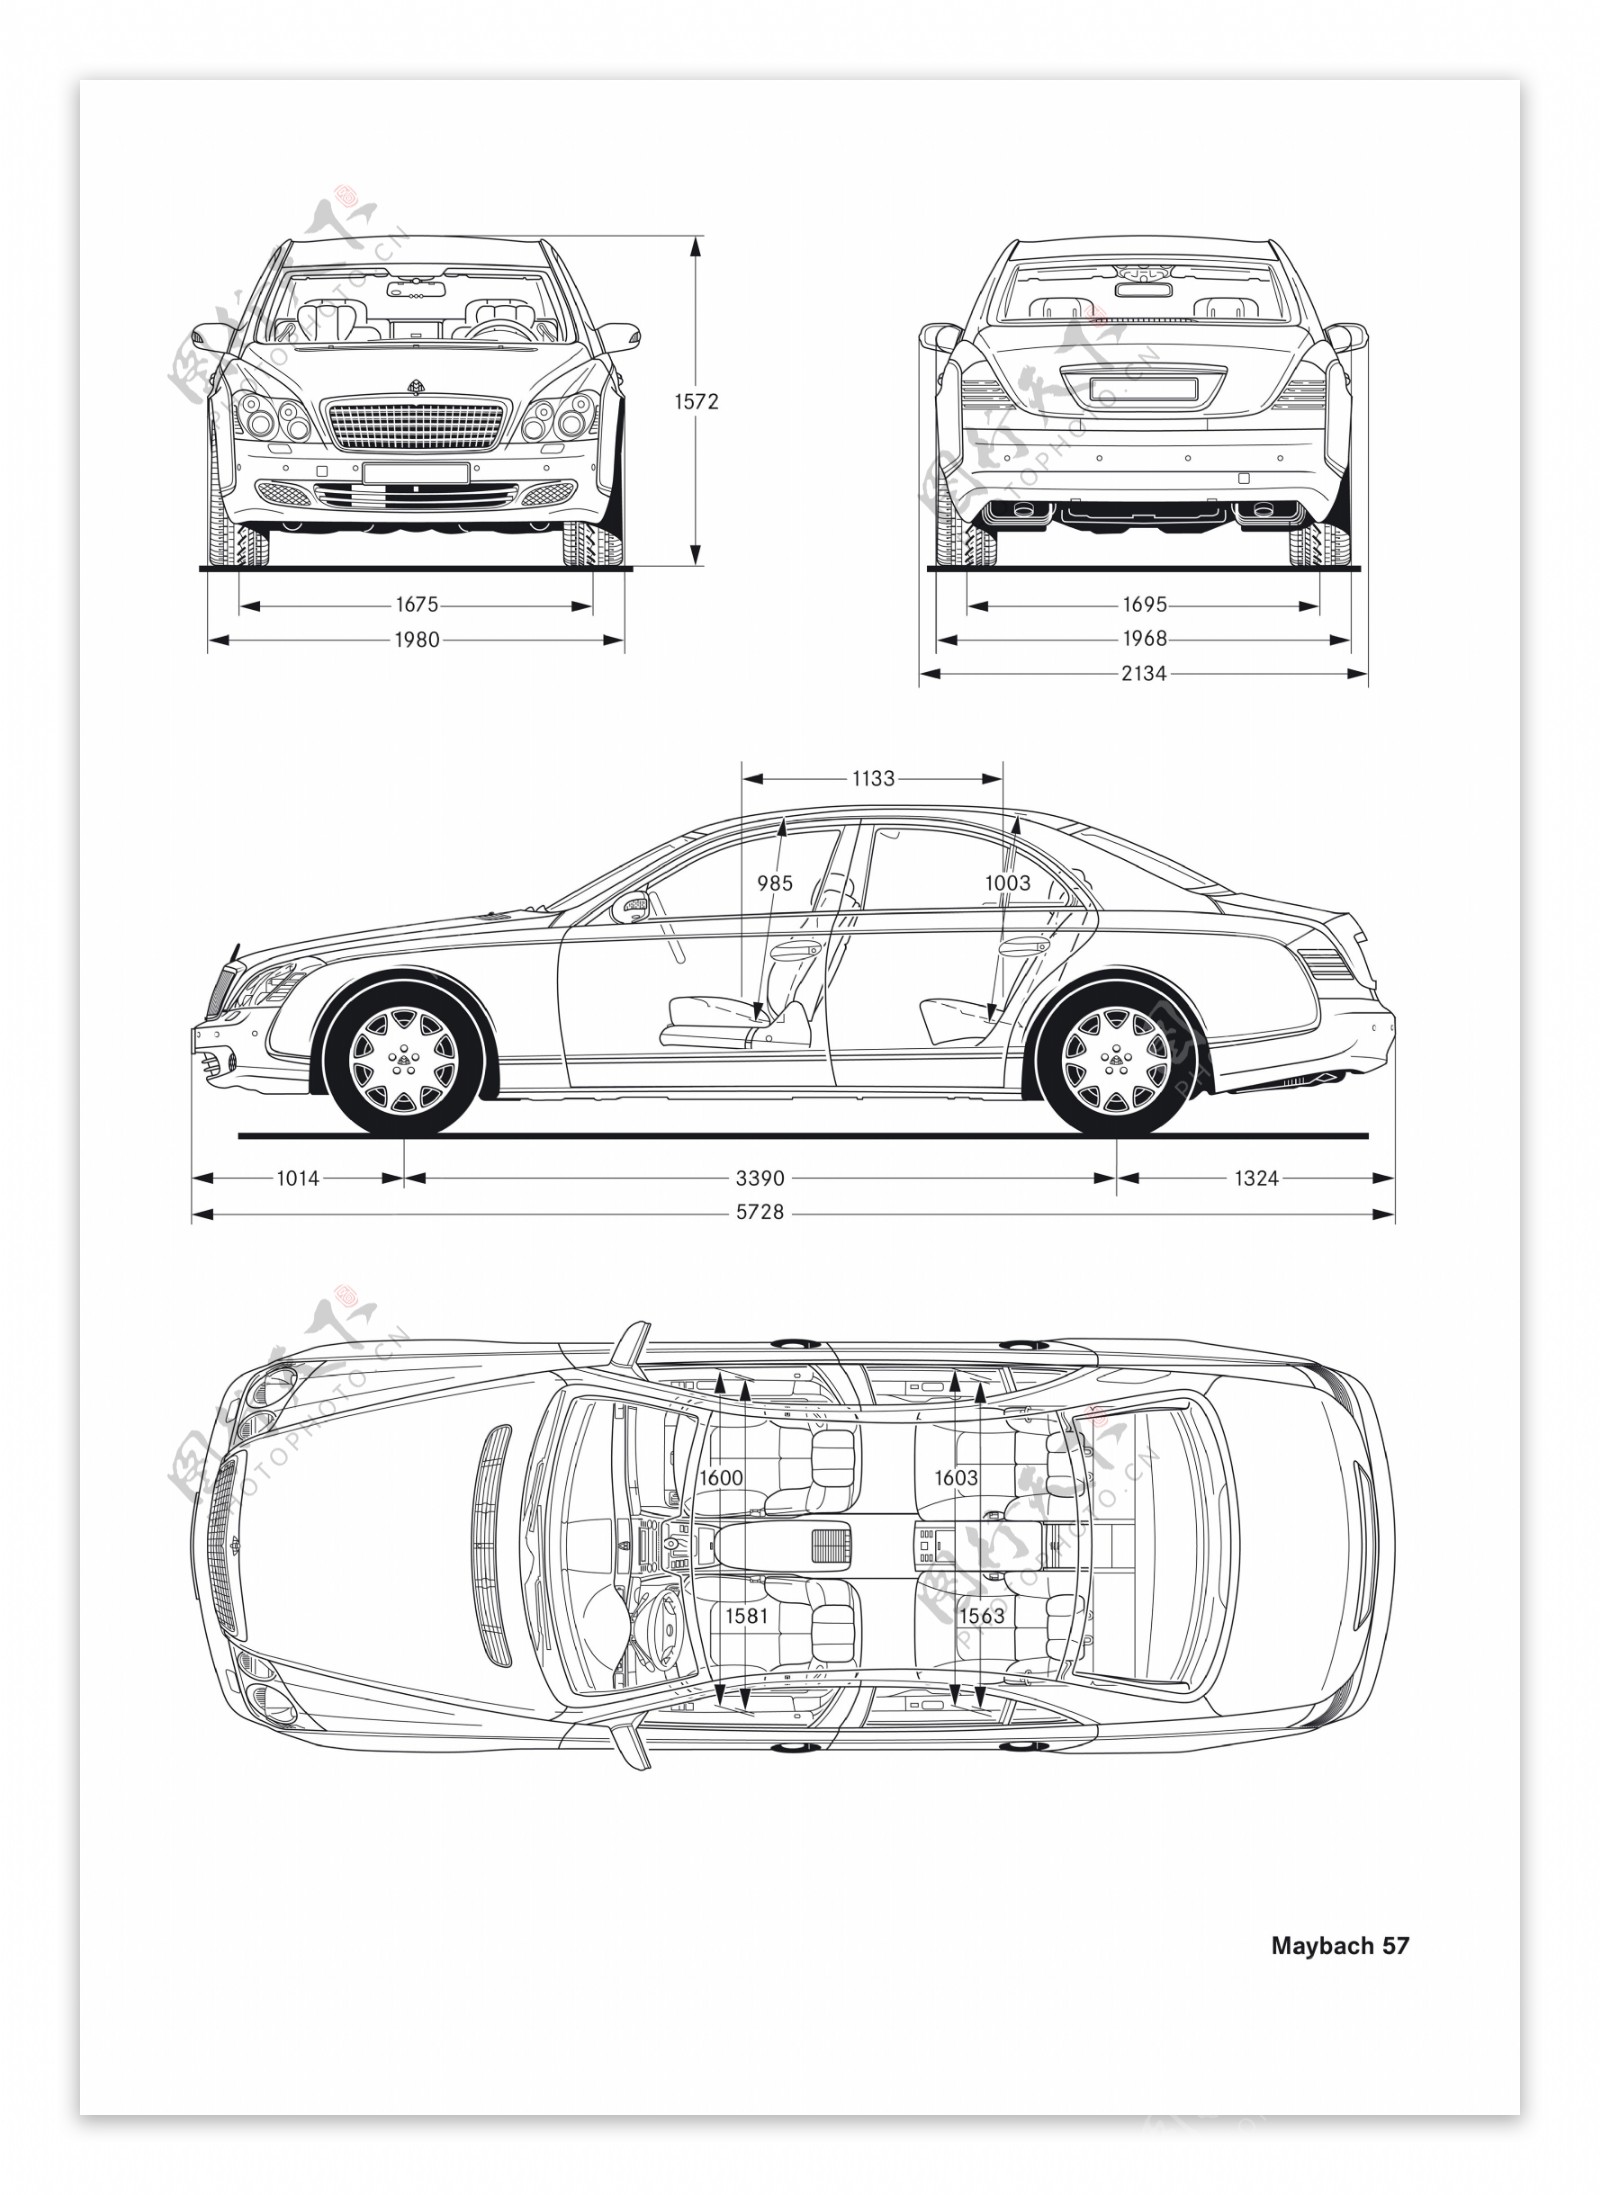 迈巴赫汽车结构图图片